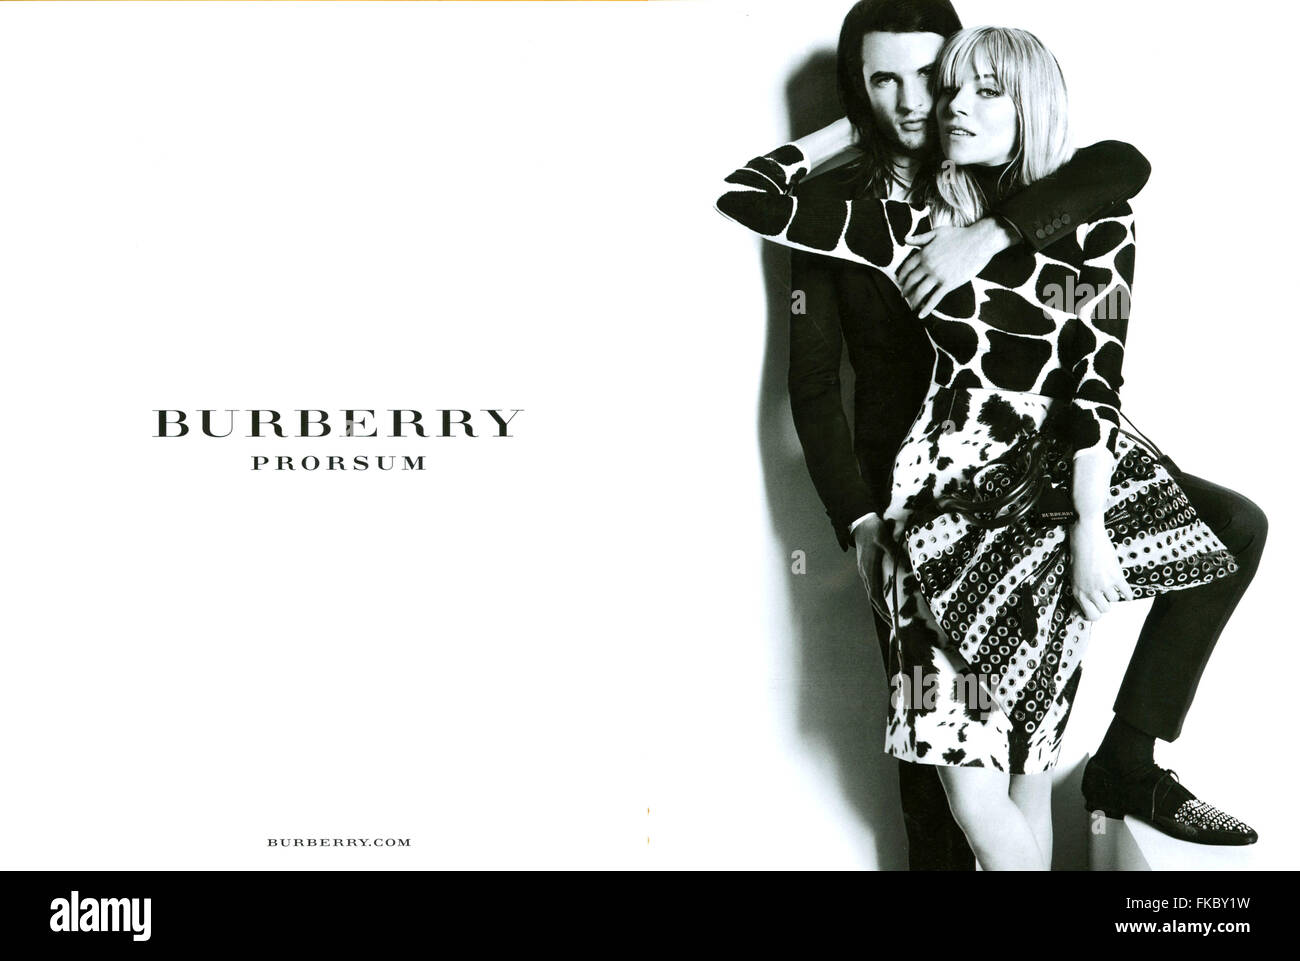 2010S UK Burberry Magazine annuncio pubblicitario Foto Stock